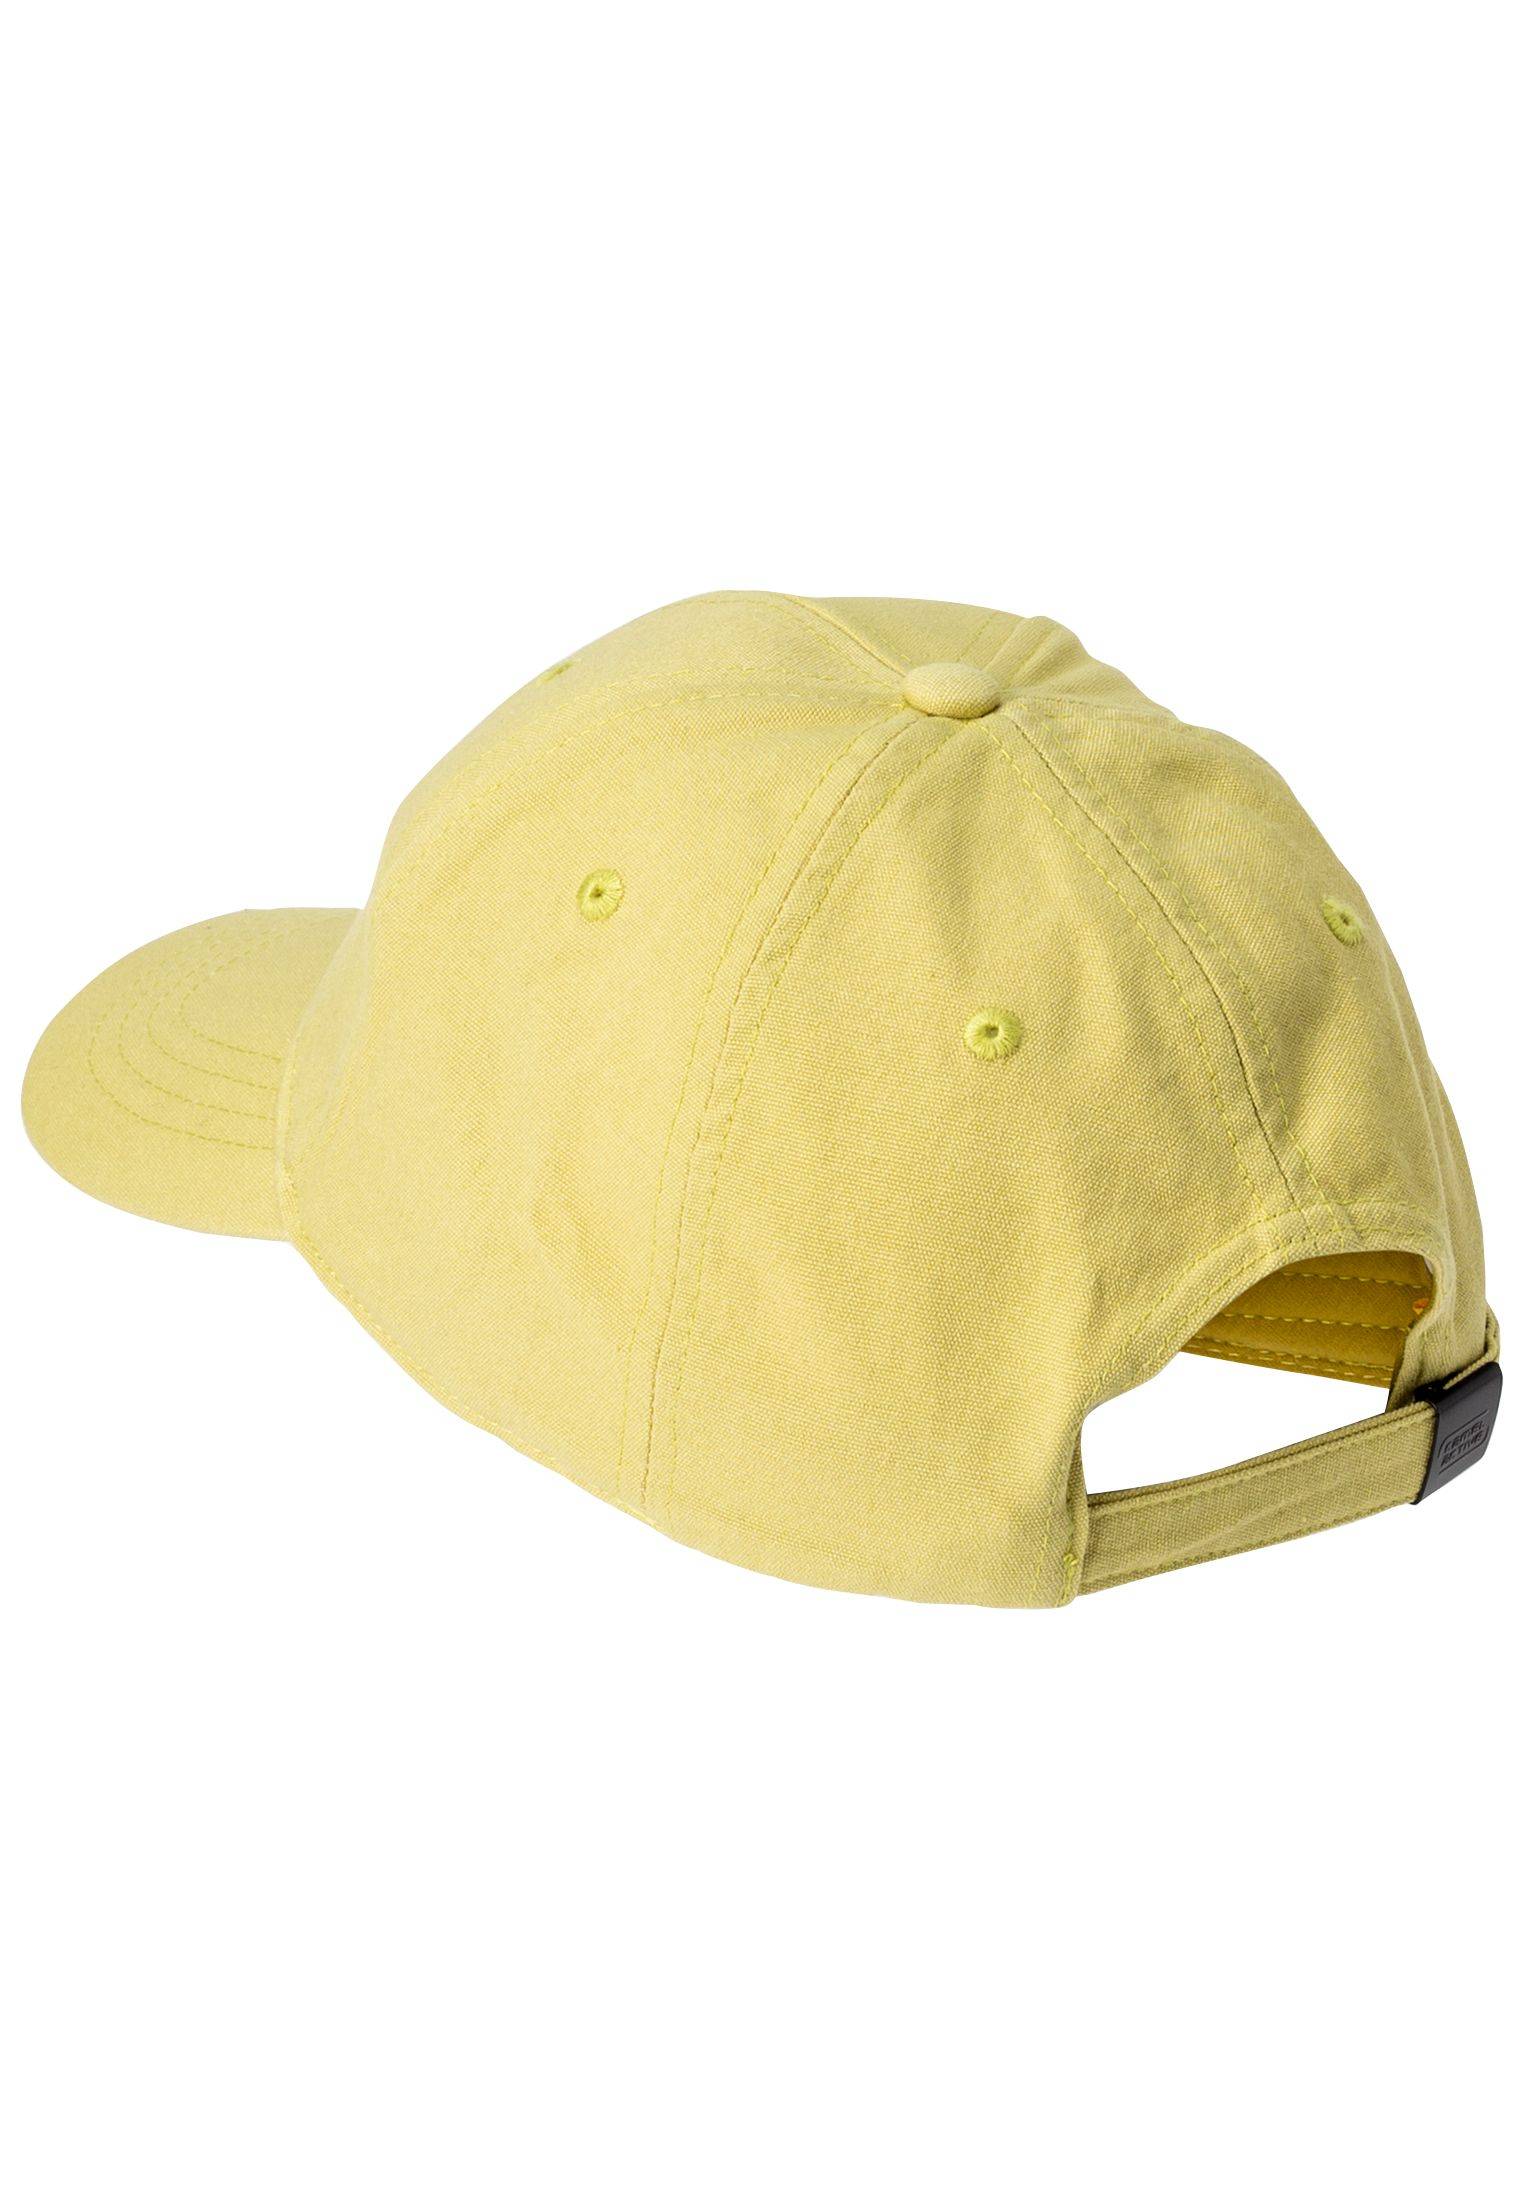 Мужская кепка Camel Active (Baseball cap 4062305C23), оливковая, цвет оливковый, размер O/S - фото 3